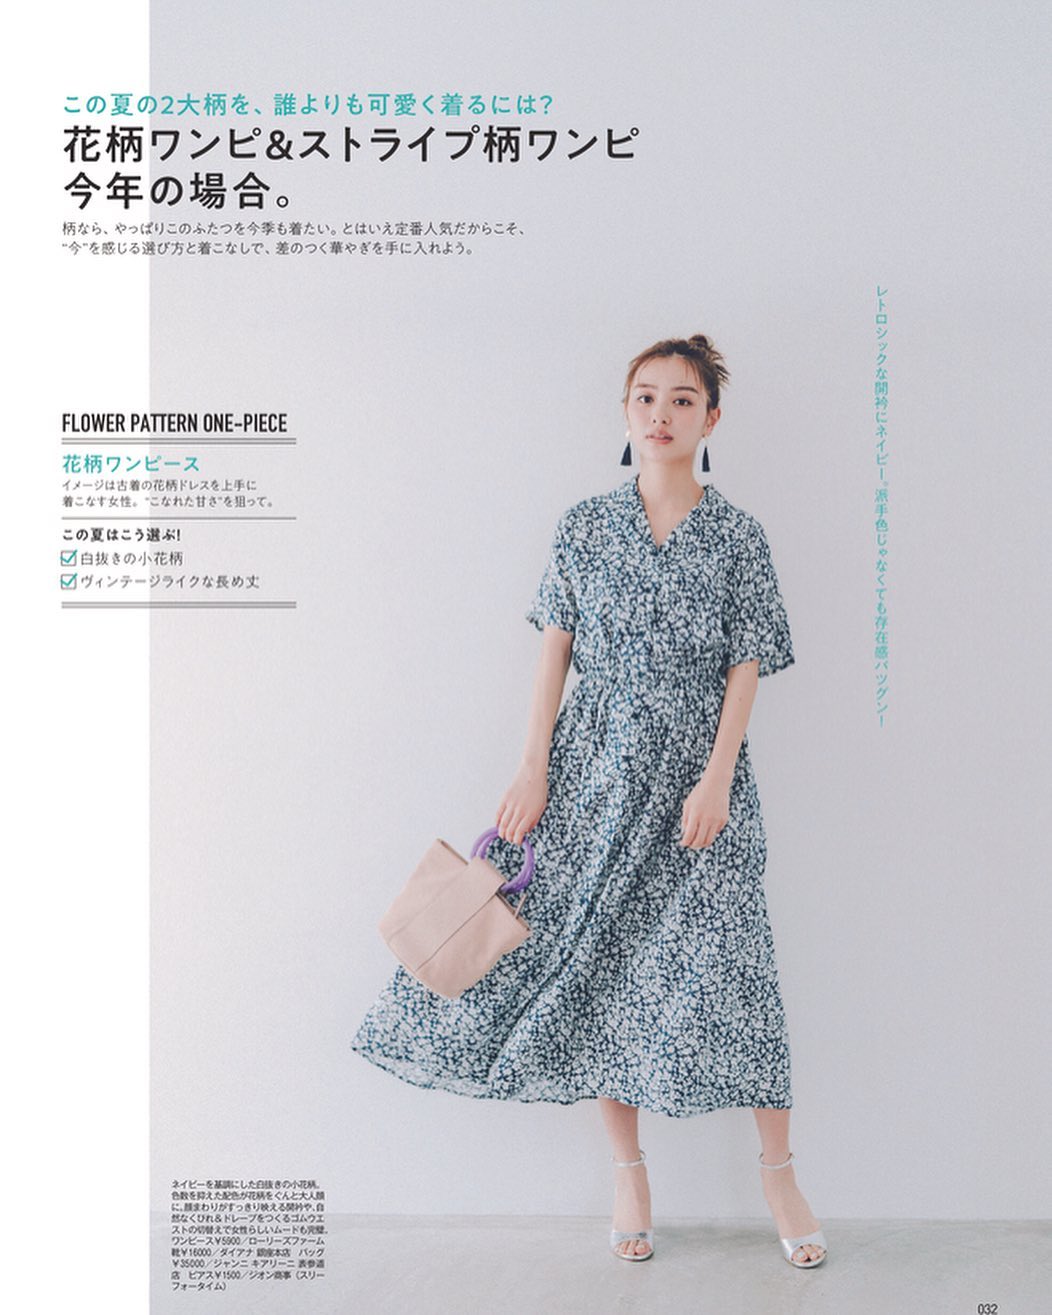 Moremagazine 今年の夏は ワンピースが空前の大ブーム 発売中のmore7月号のワンピース特集 もうチェックしていただけましたか 今年買うべきワンピが勢ぞろい お近くの書店 Wacoca Japan People Life Style